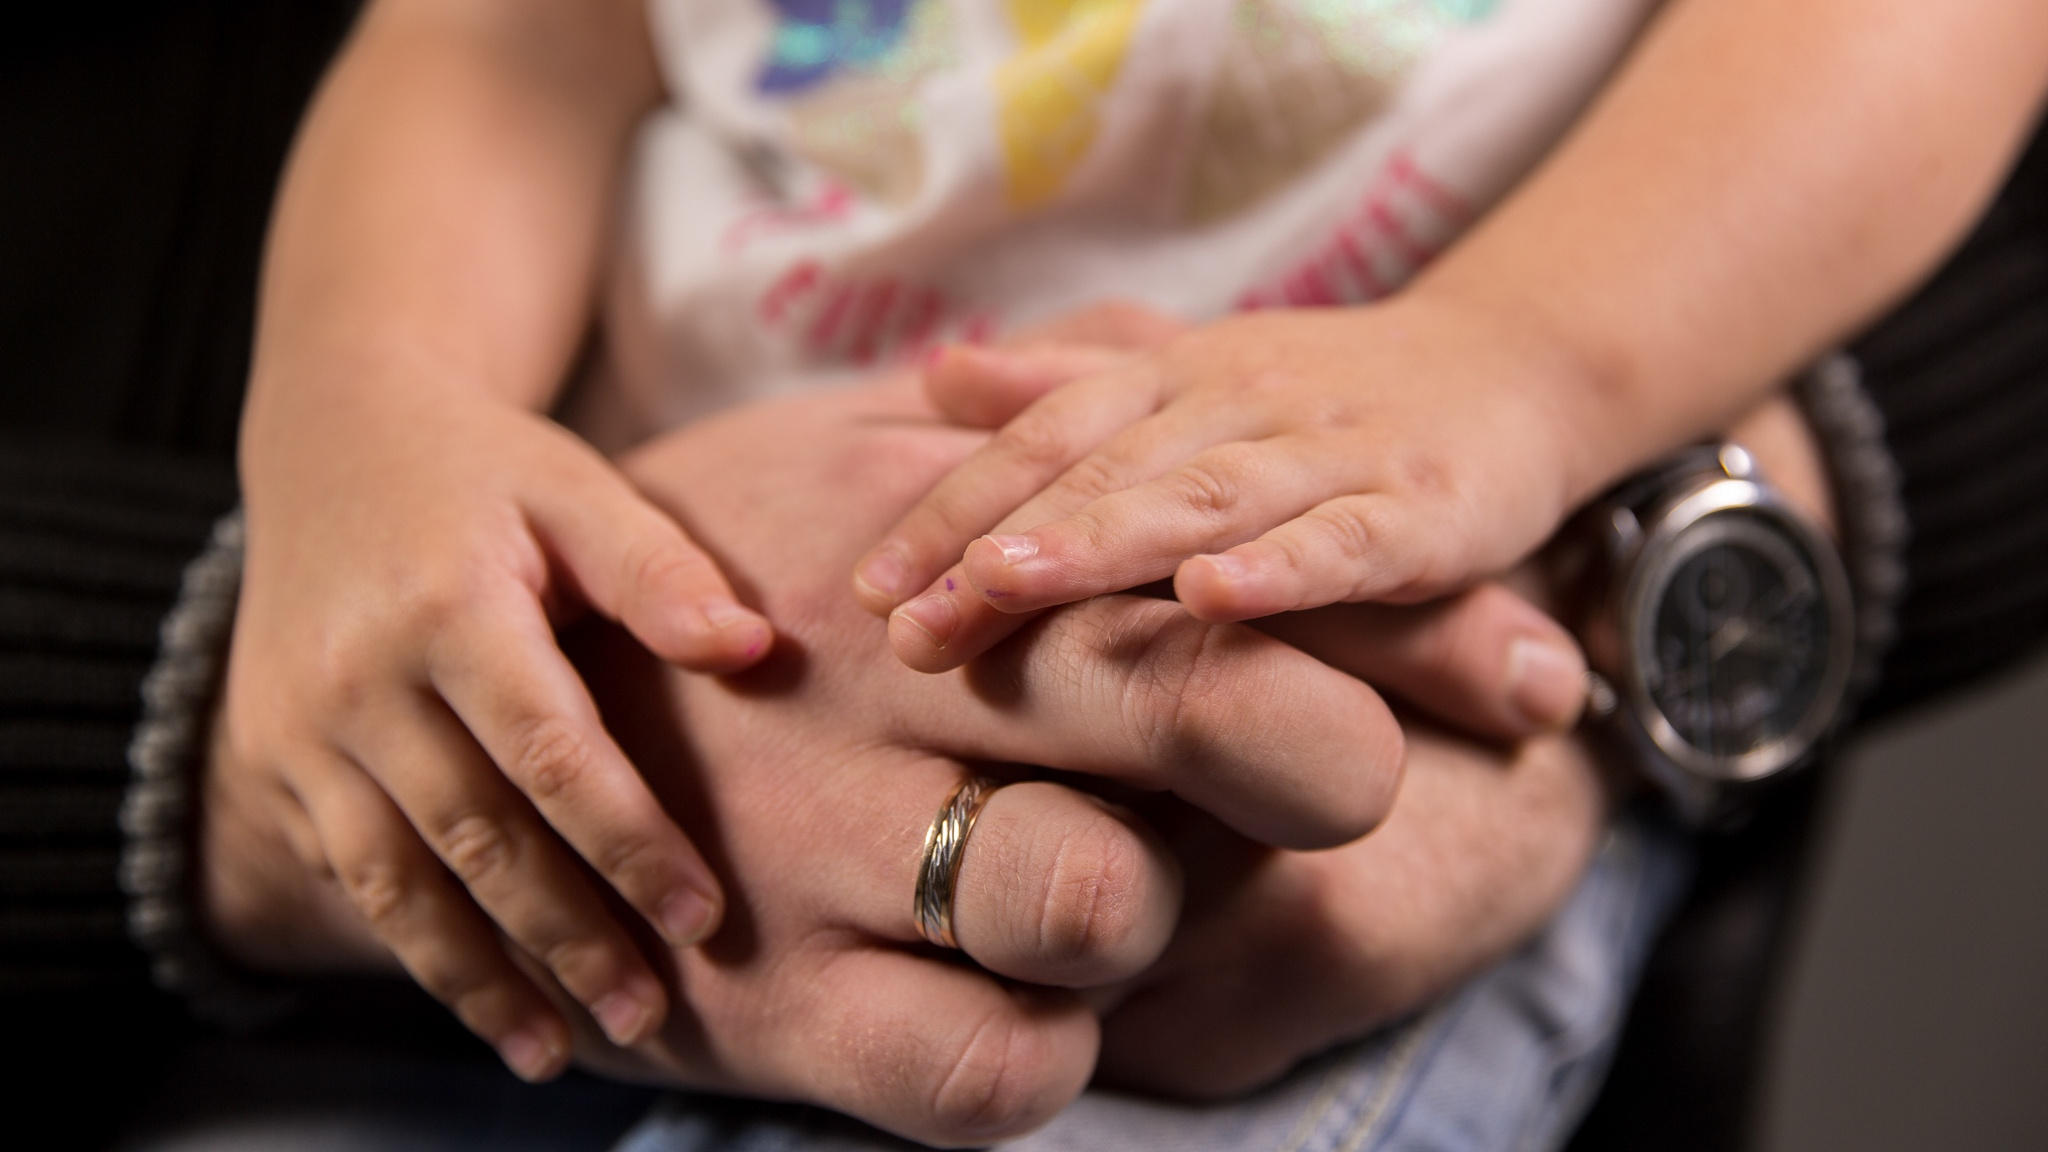 «Развод родителей — это всегда катастрофа»: семейный психолог о том, нужно ли сохранять брак и почему распадаются семьи